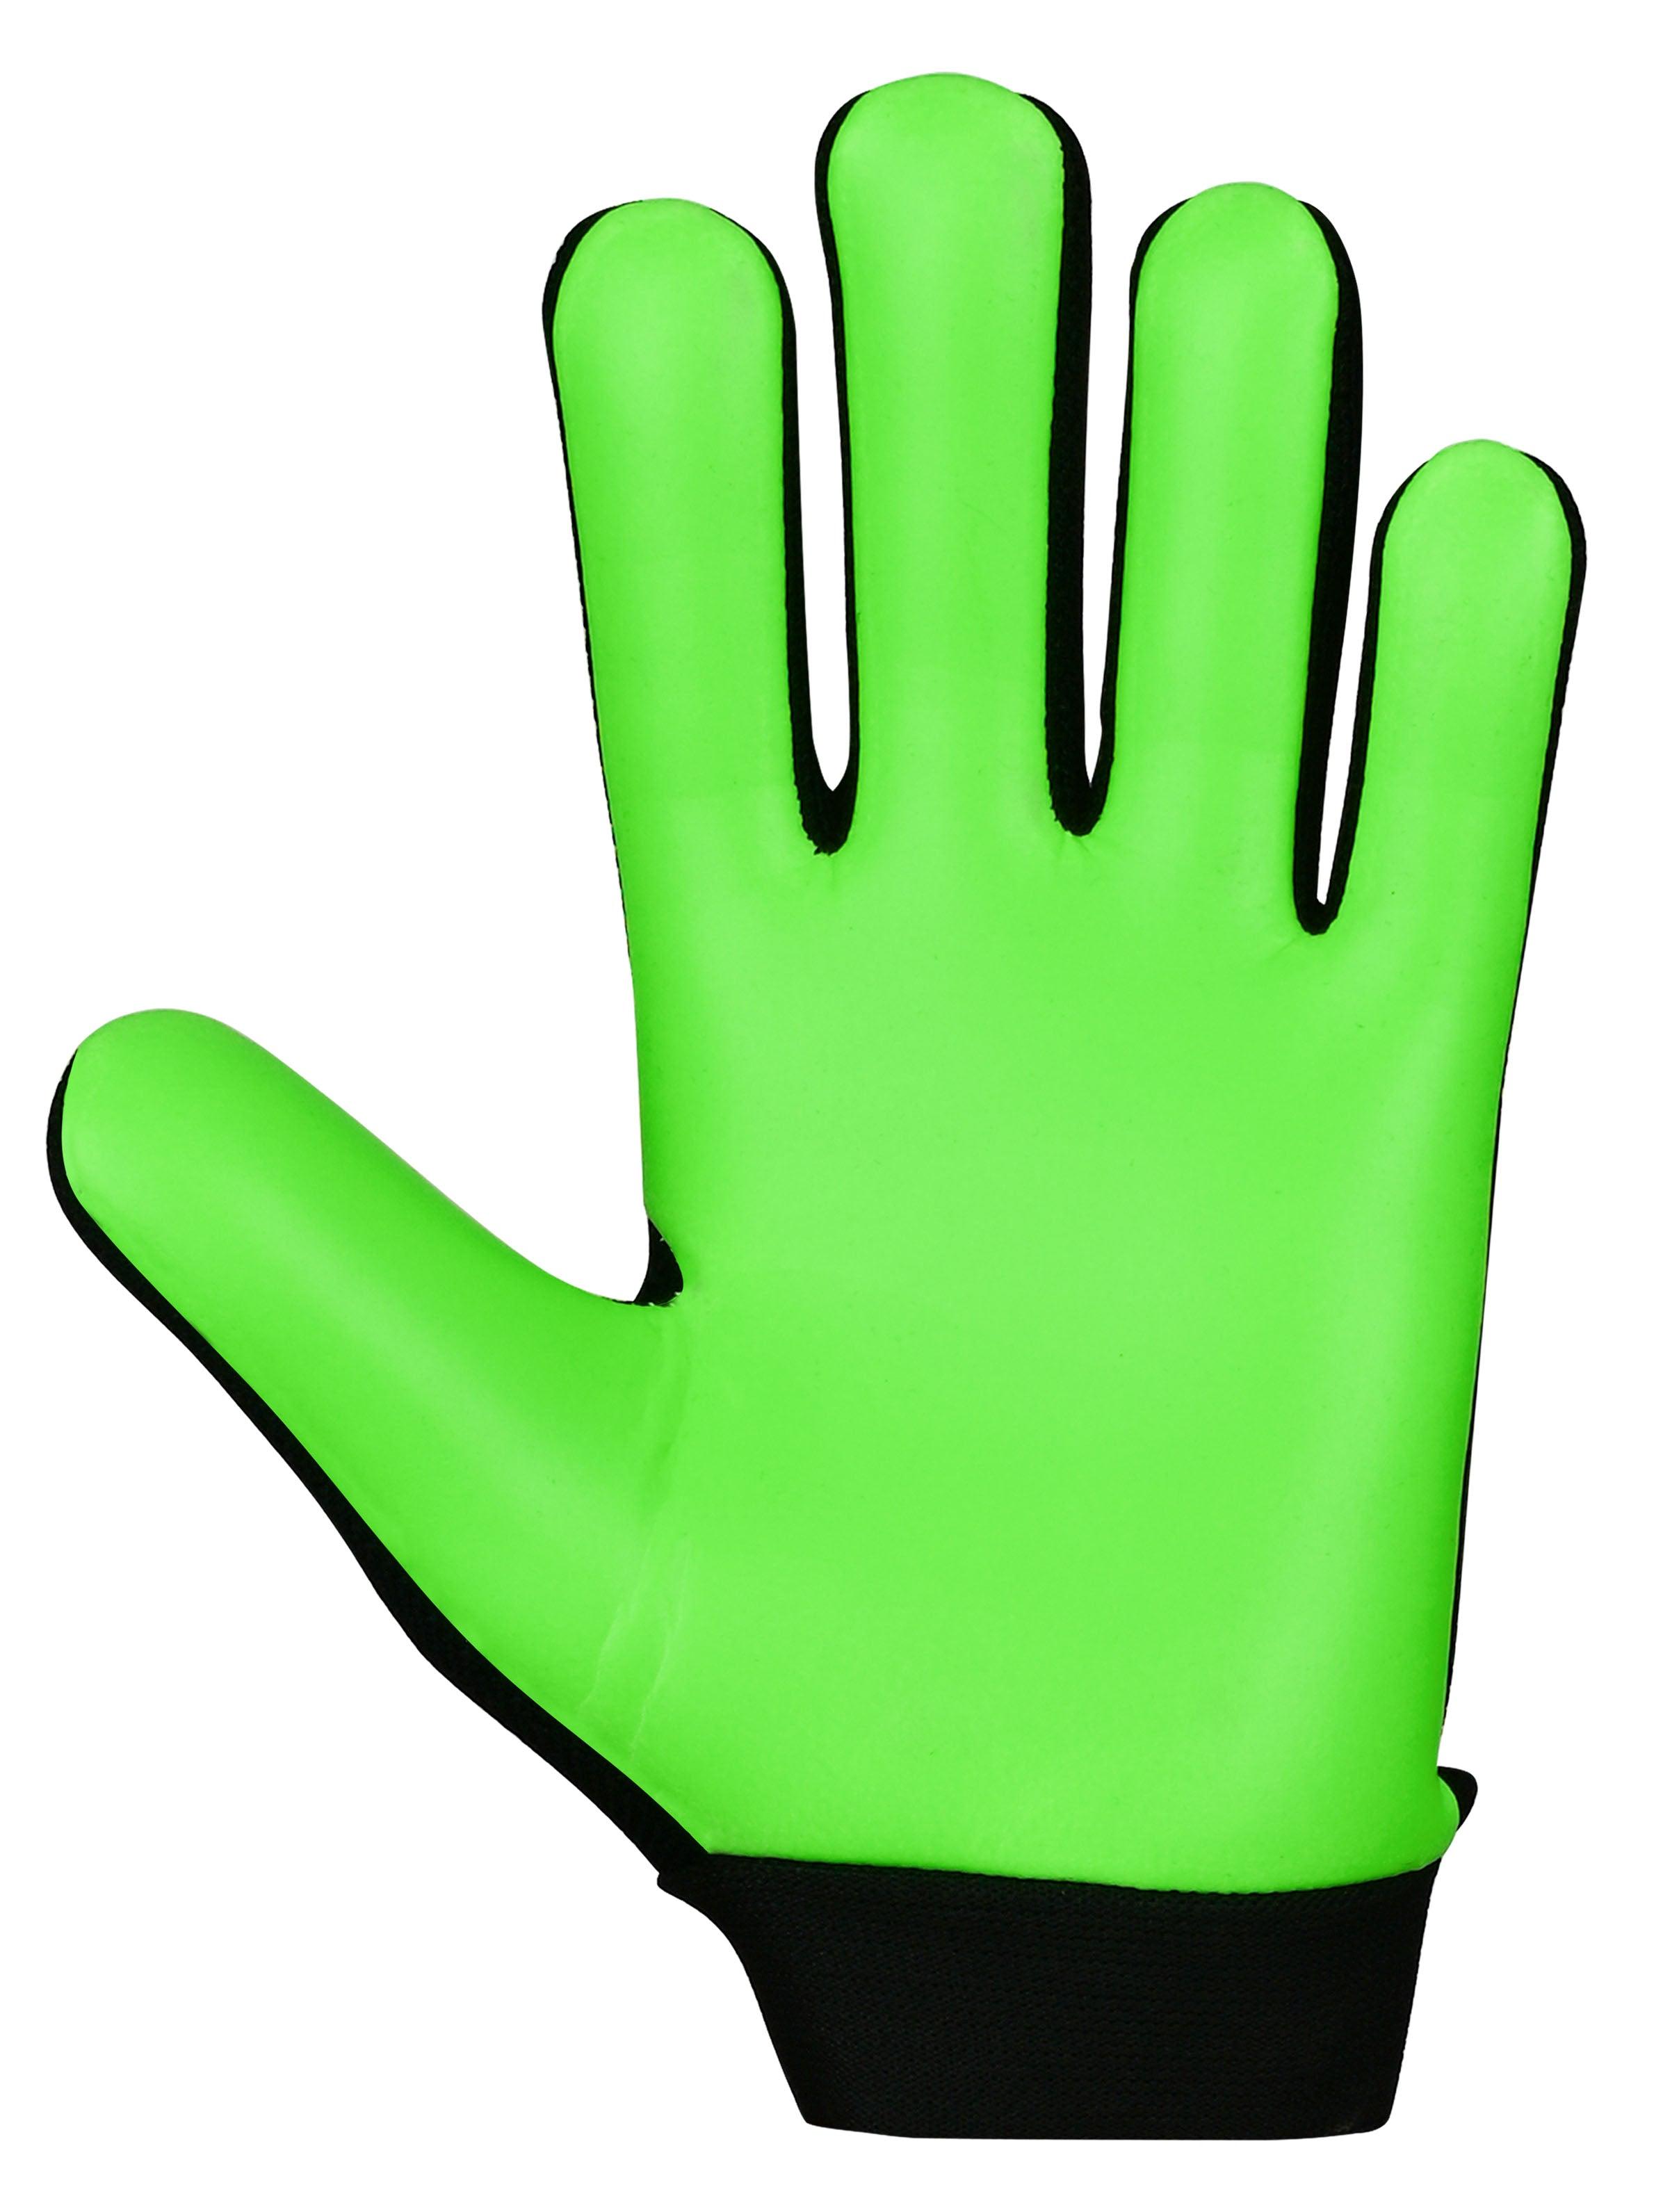 CLAW 2.0 GREEN children's goalkeeper gloves